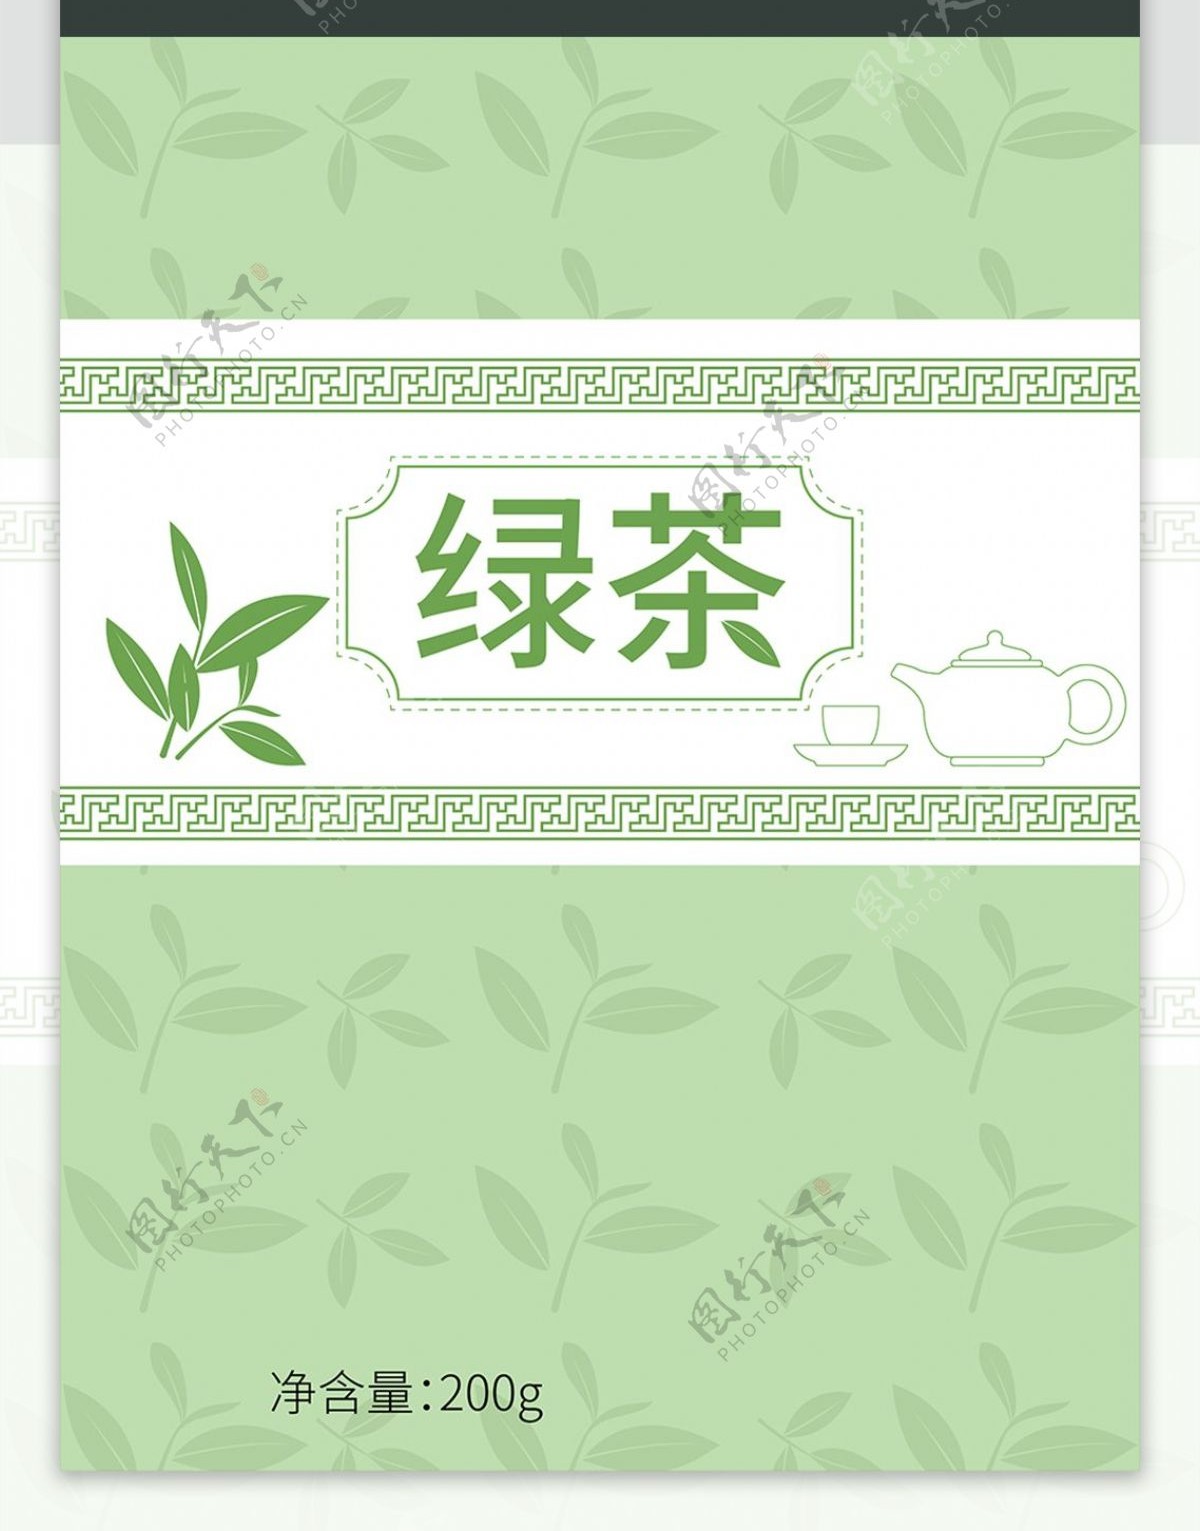 包装插画绿茶包装